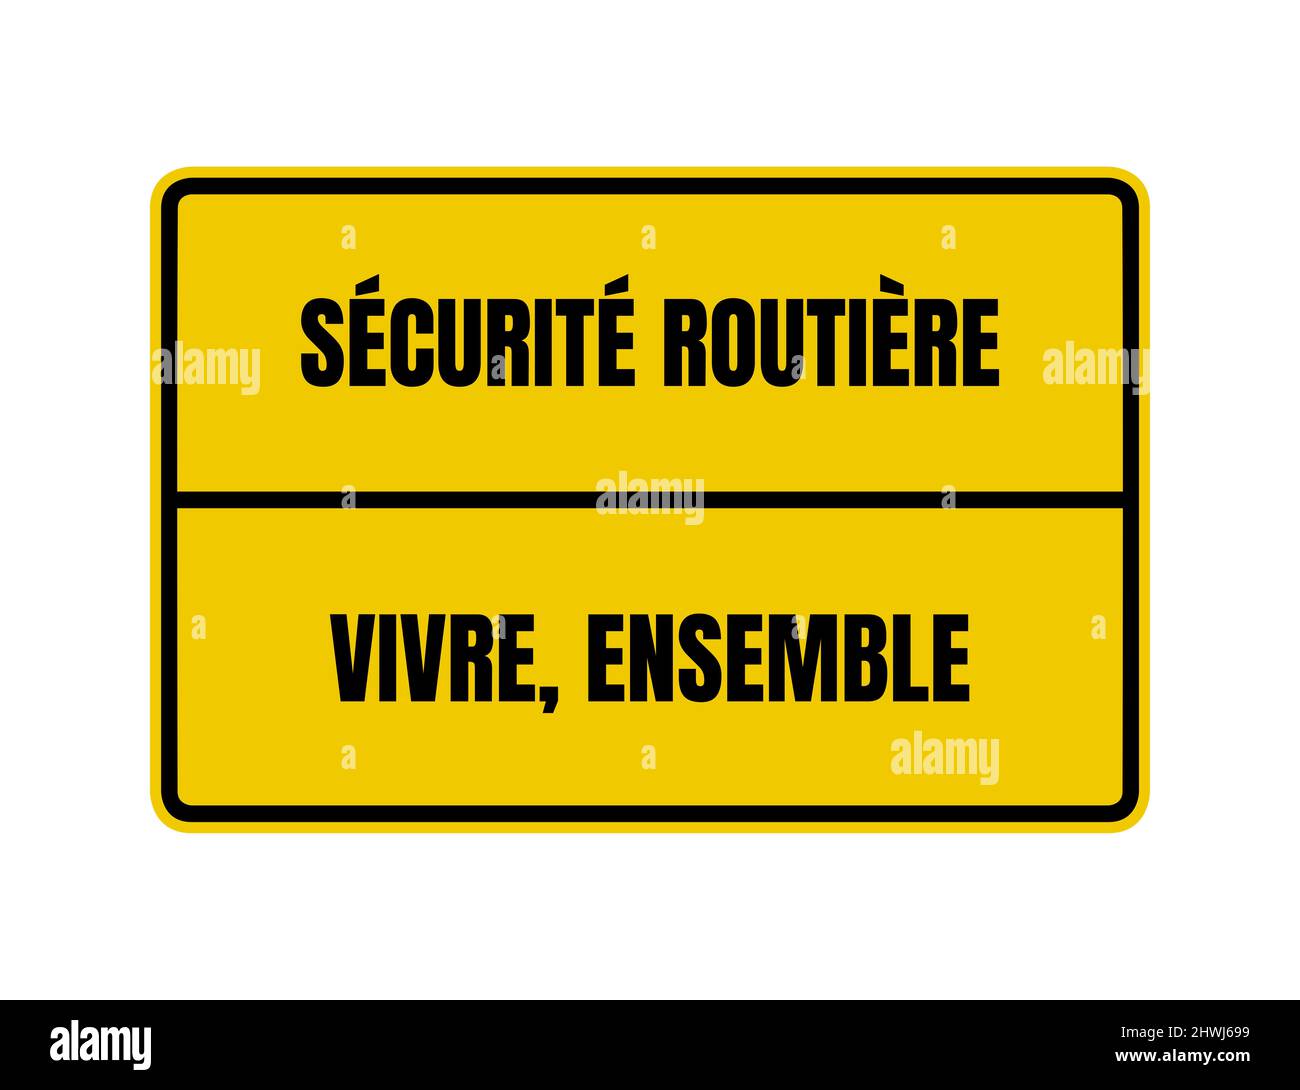 Le slogan "sécurité routière vivre ensemble" en France s'appelle securite routiere vivre ensemble en français Banque D'Images